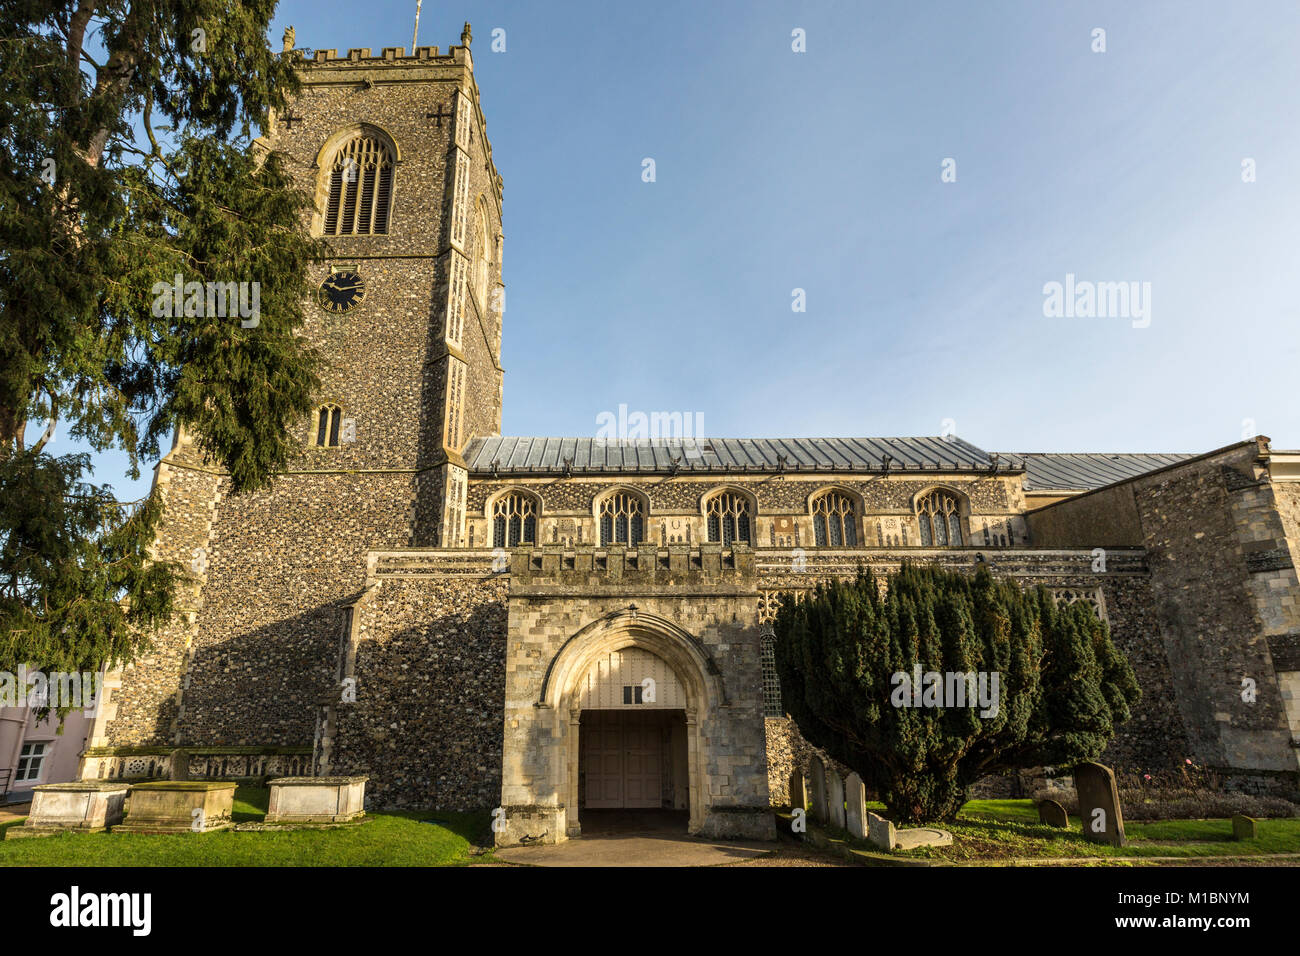 Framlingham, Suffolk, UK. L'église de St Michel Archange. Banque D'Images